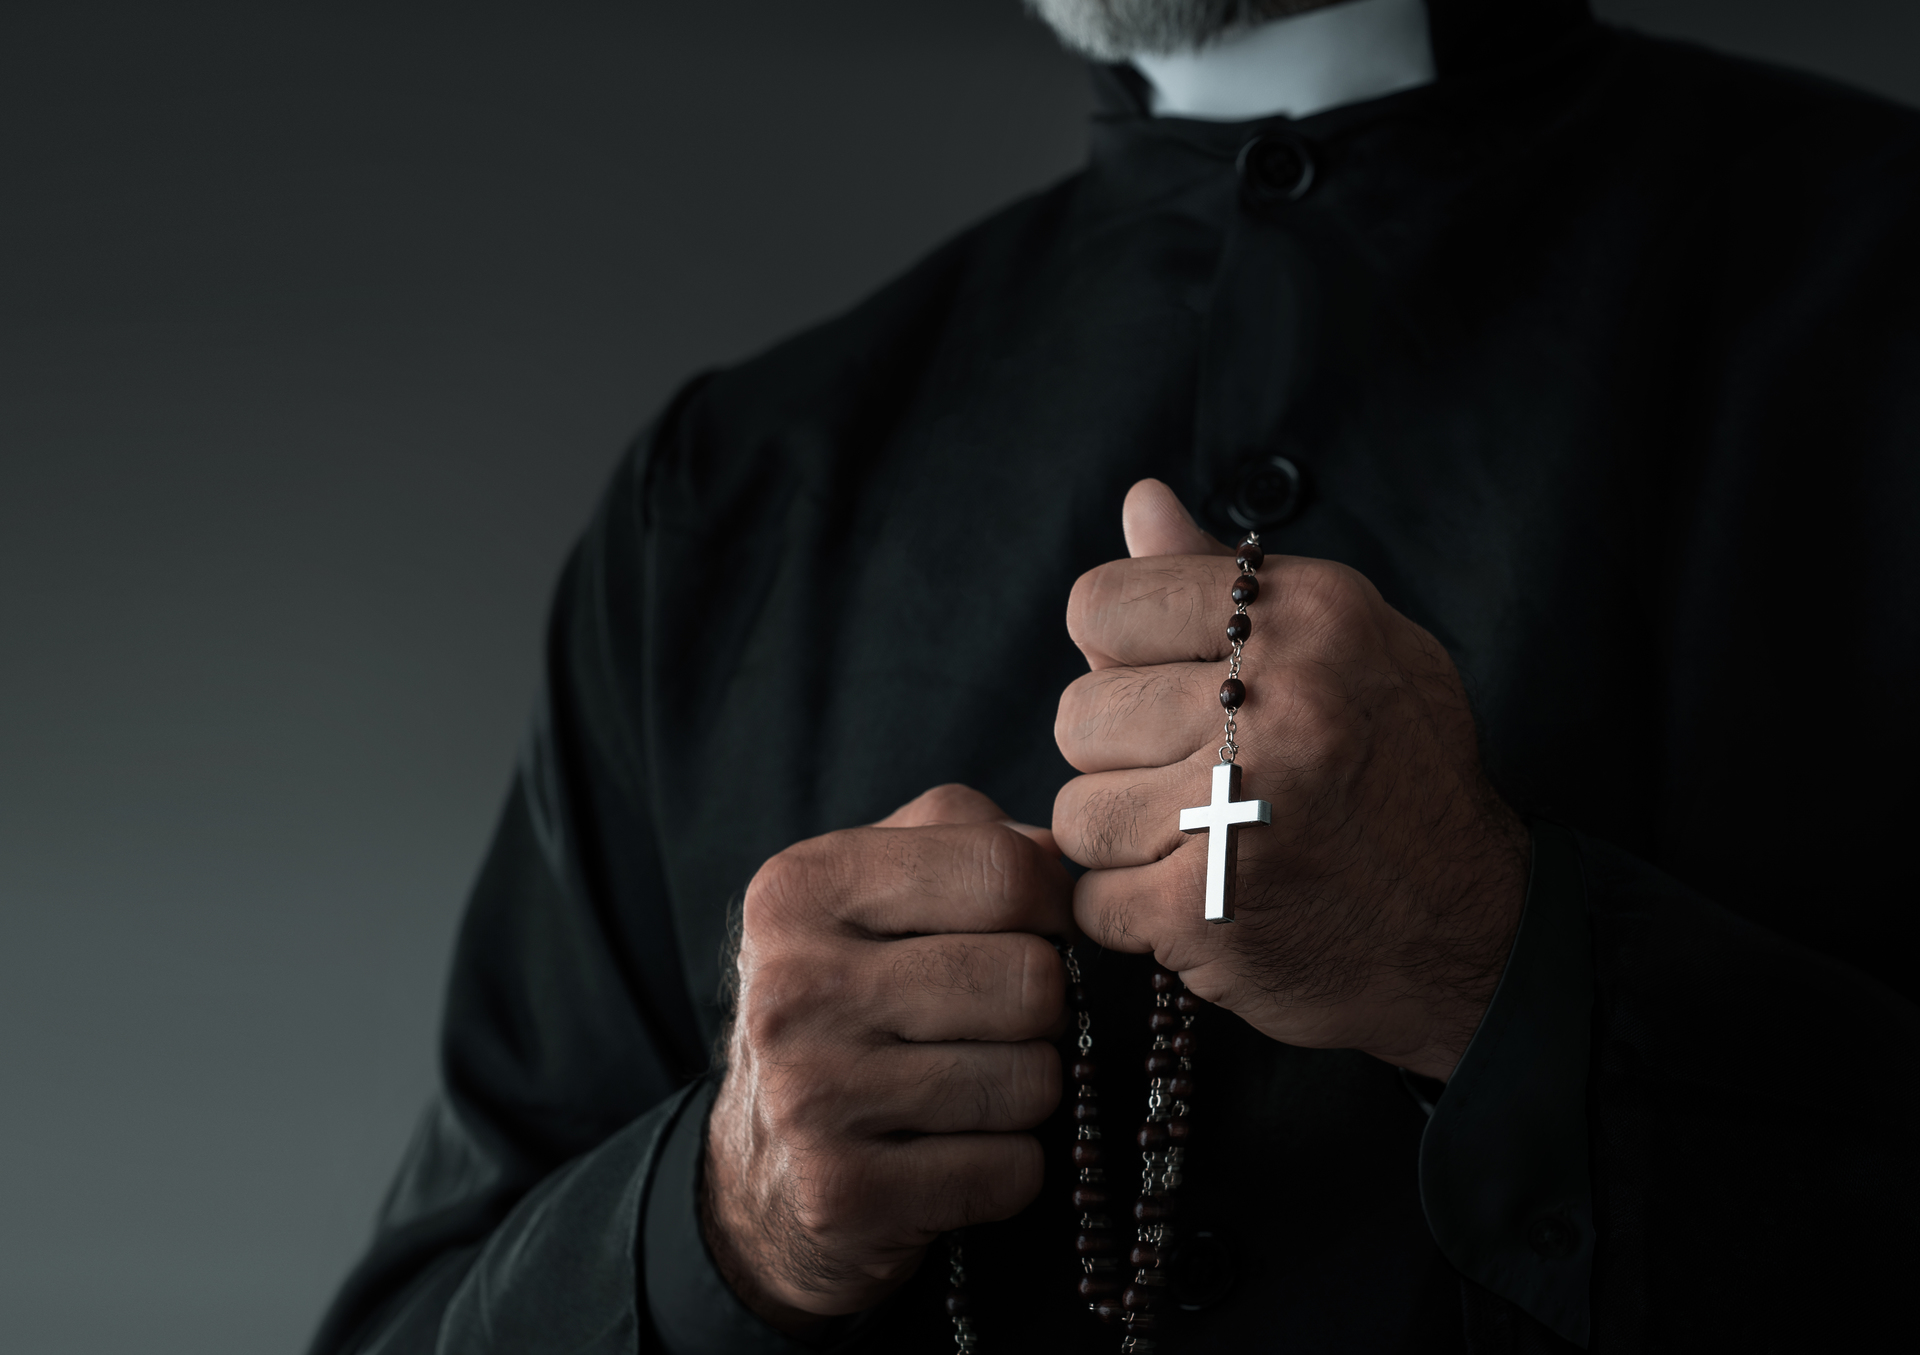 Bispo que organizou orgia com uso de drogas é condenado a um ano e meio de prisão